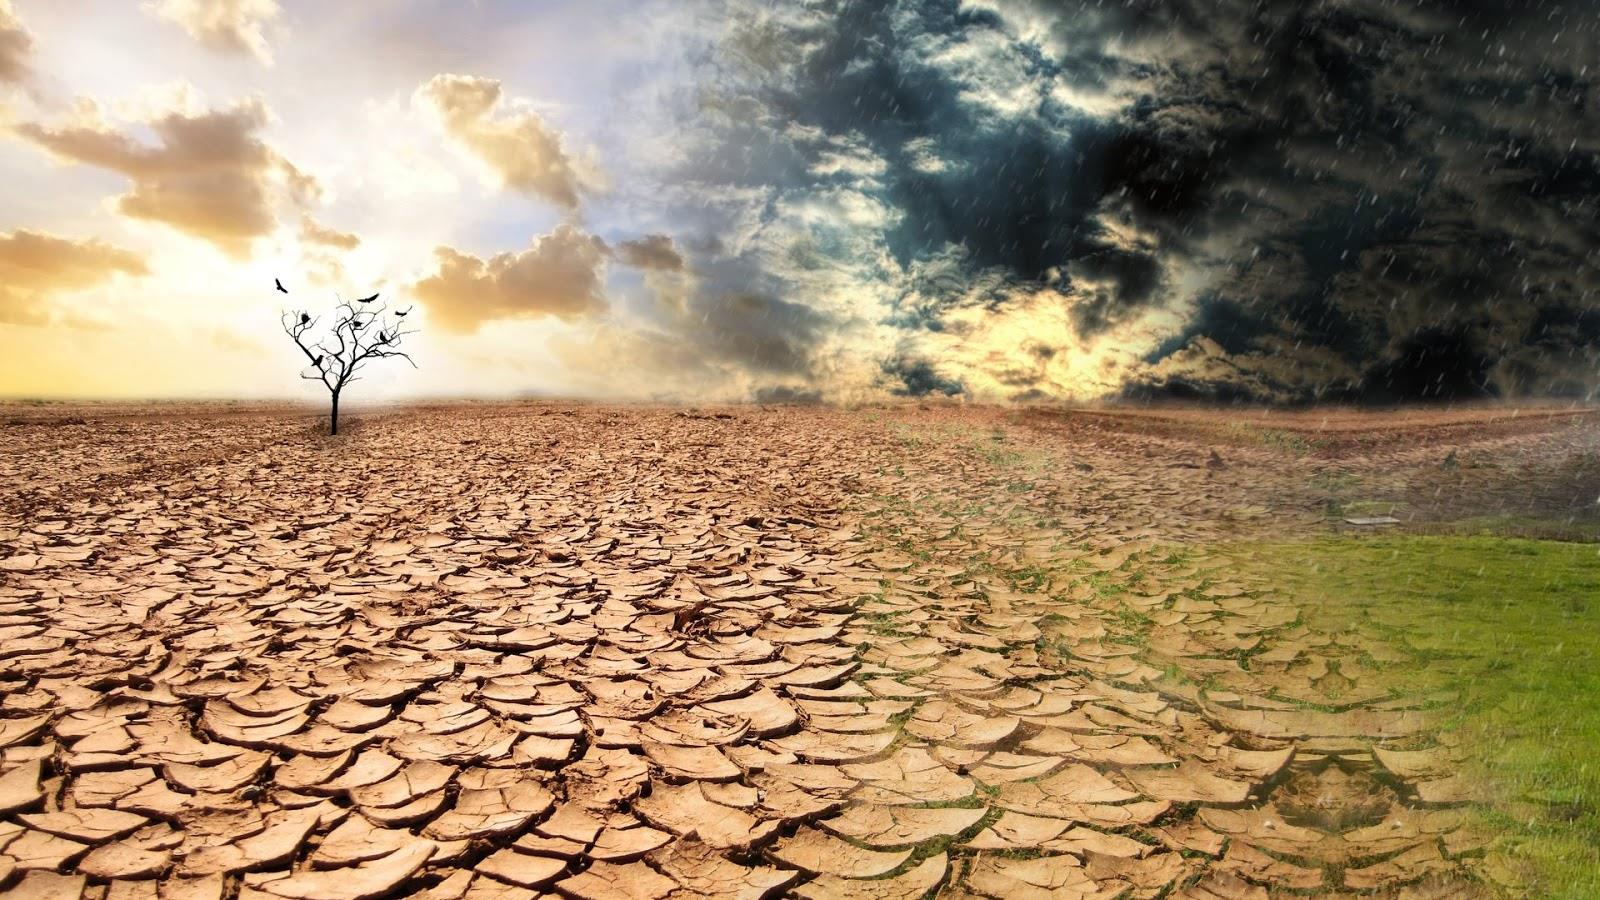 İklim Değişikliği ile Mücadele: Geleceğimizi Koruma Sorumluluğu